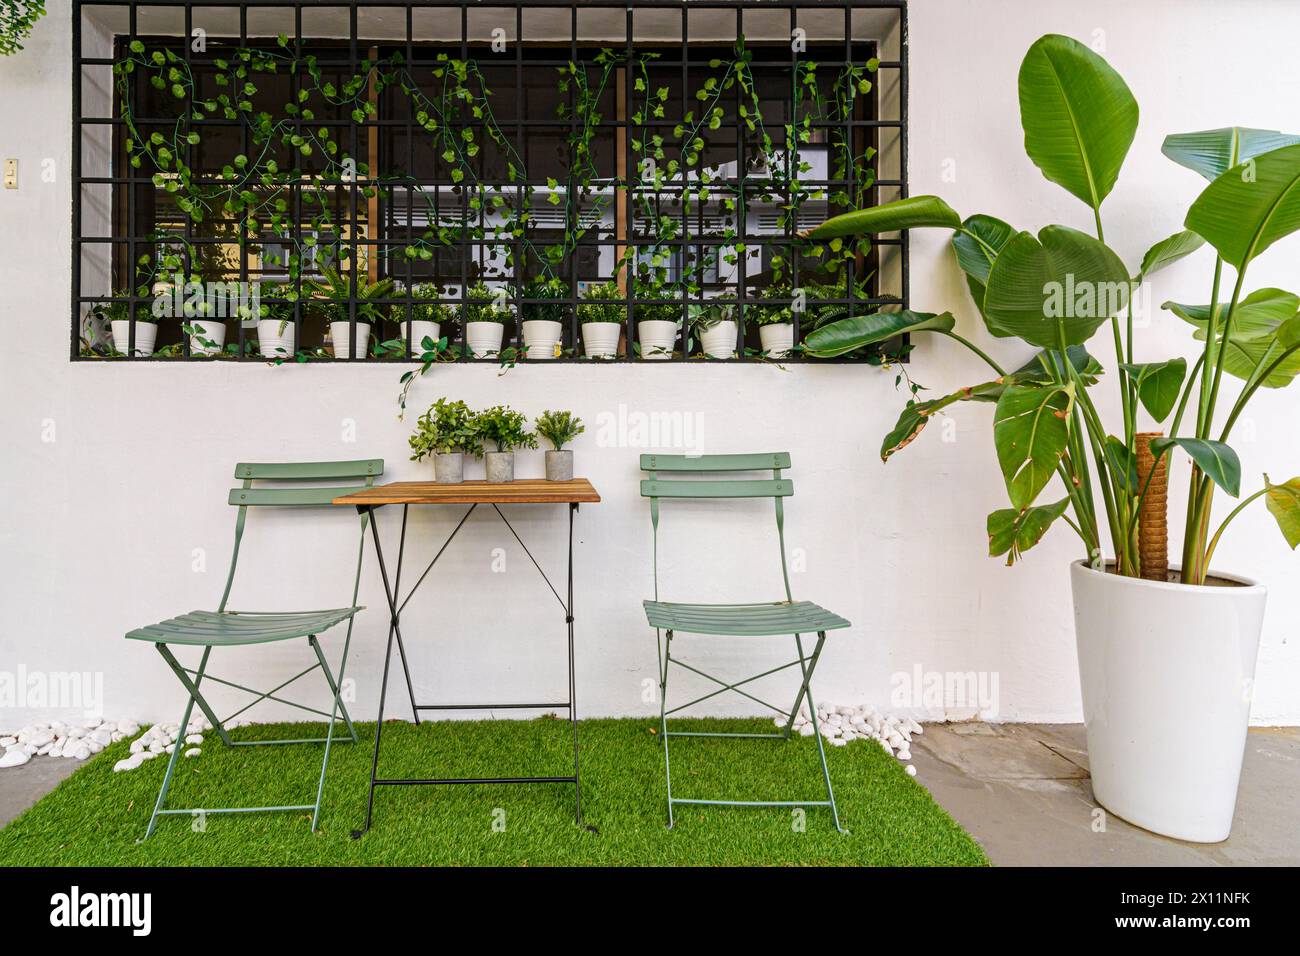 Dettagli urbani di tavoli e sedie e piante in vaso fuori da una casa nella pittoresca enclave di Tiong Bahru Estate, Singapore Foto Stock